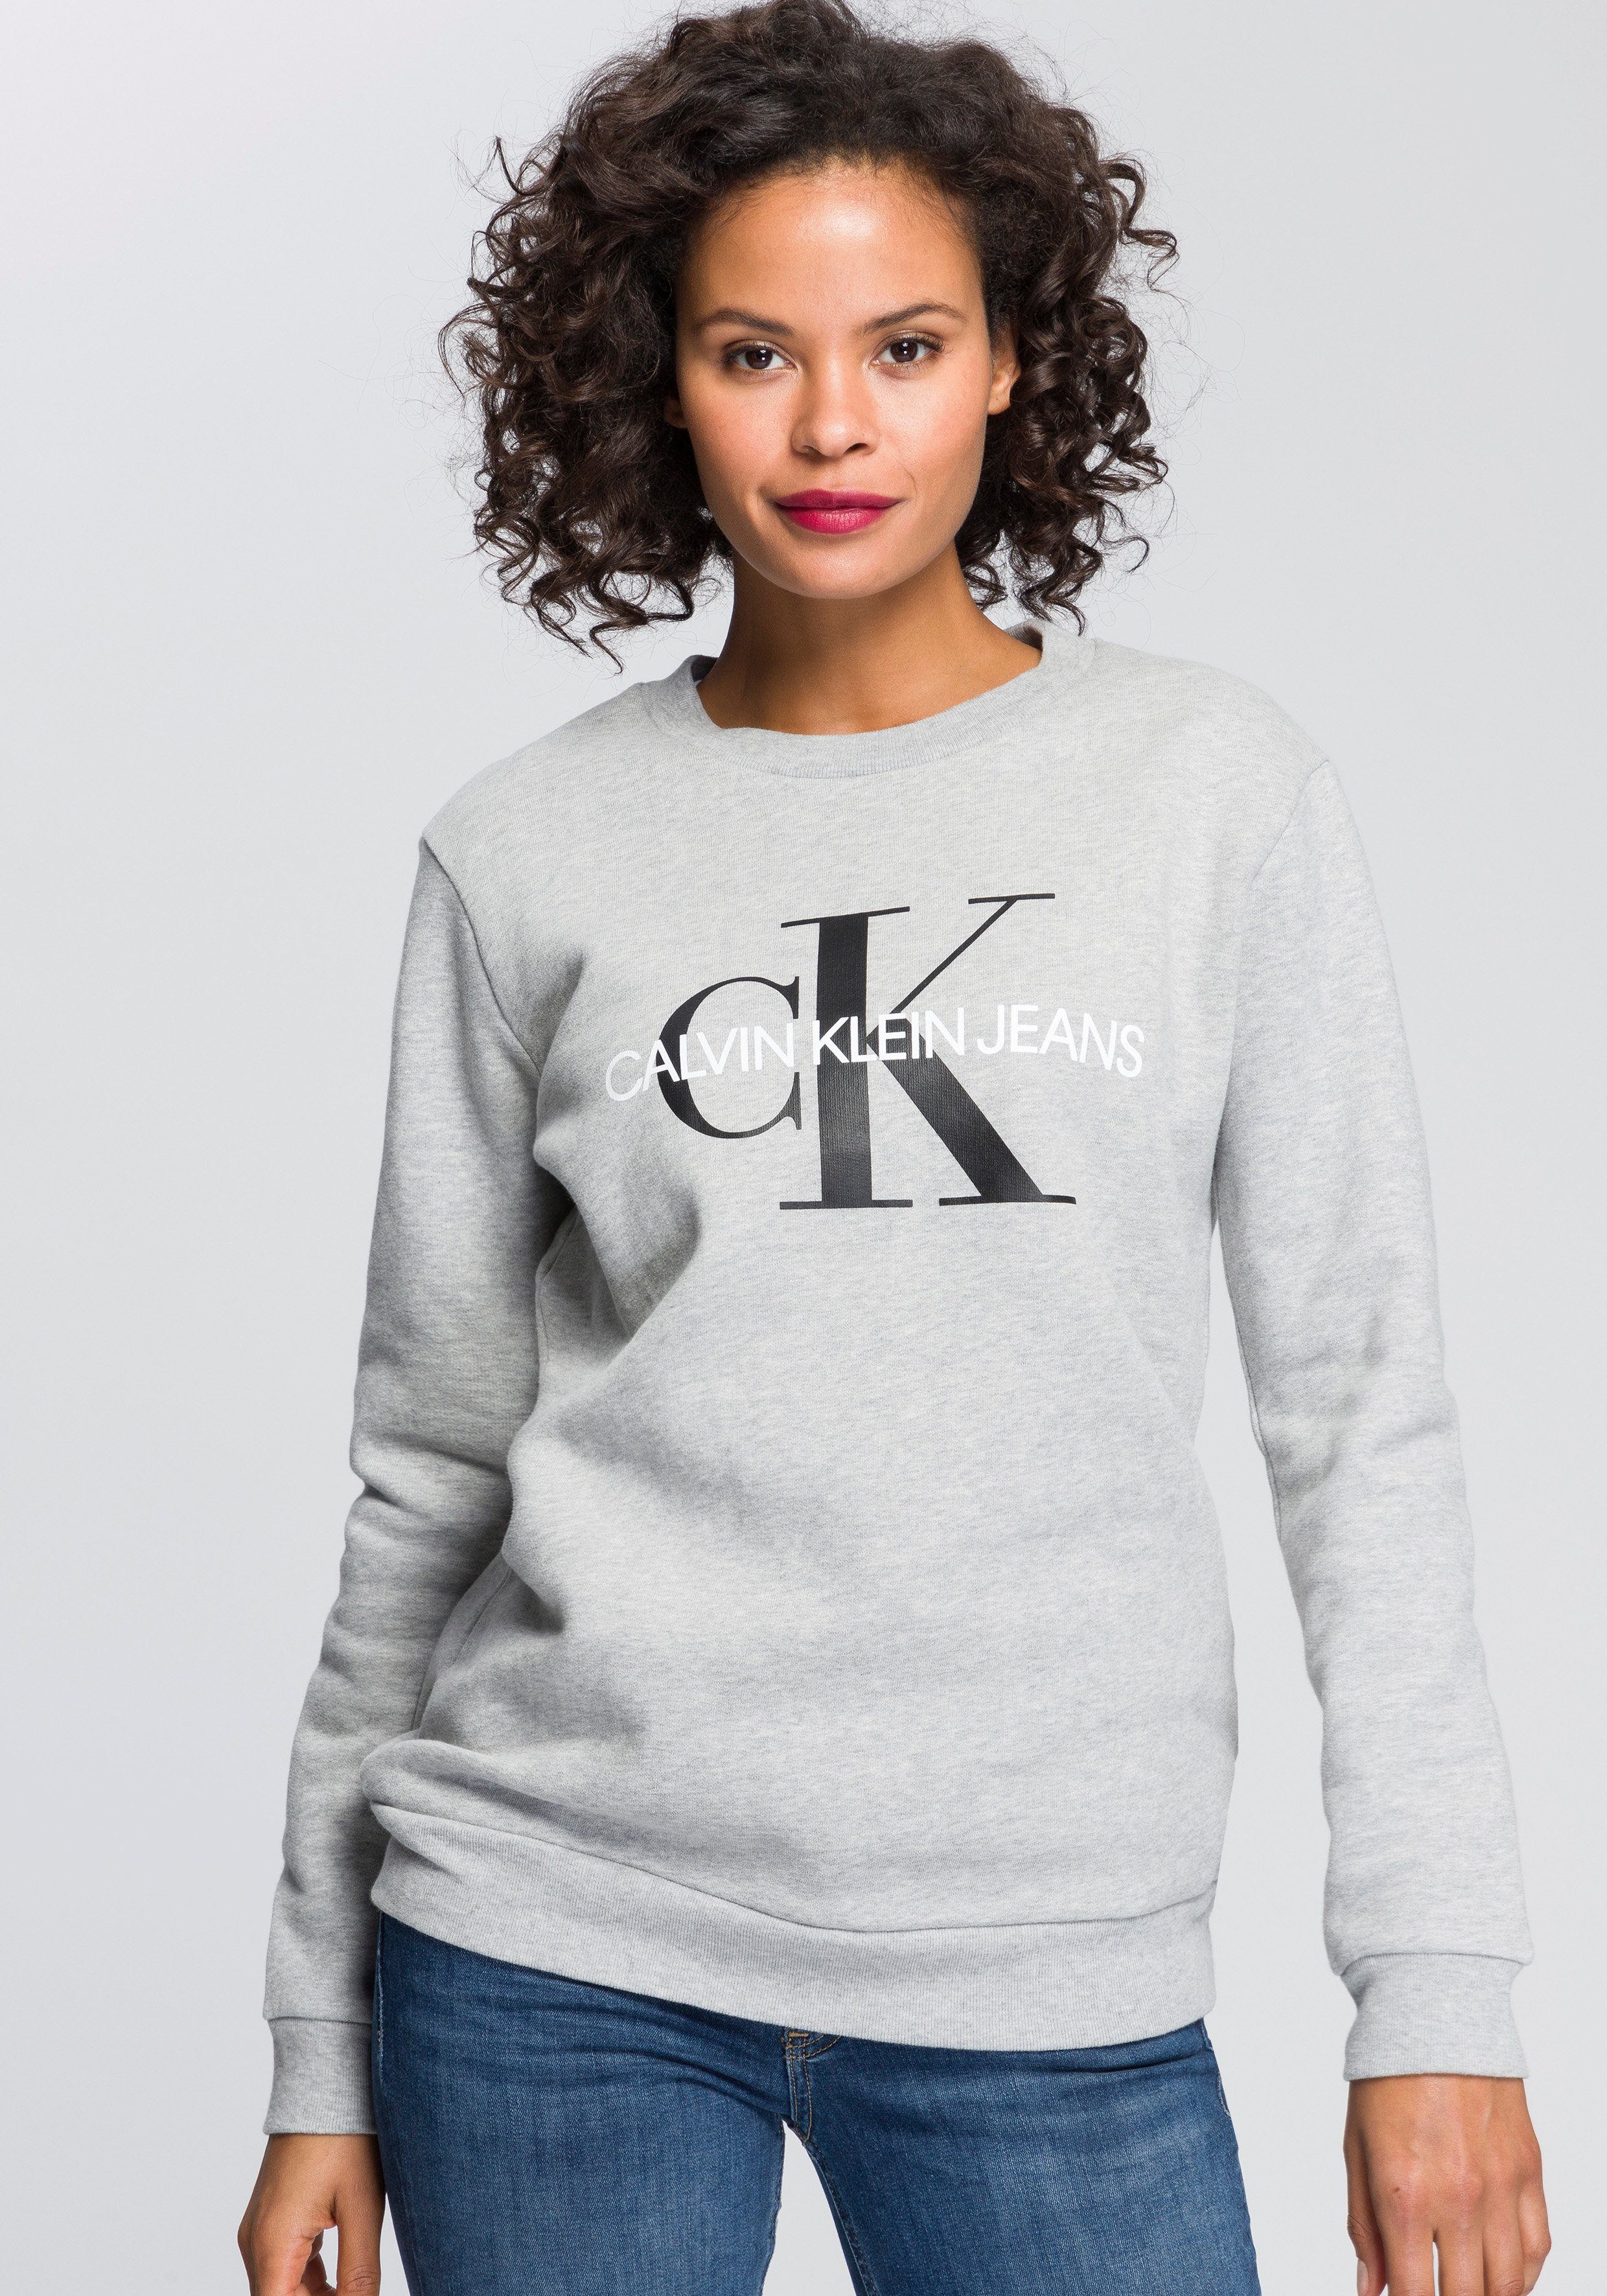 Calvin Klein Sweatshirt Damen online kaufen | OTTO